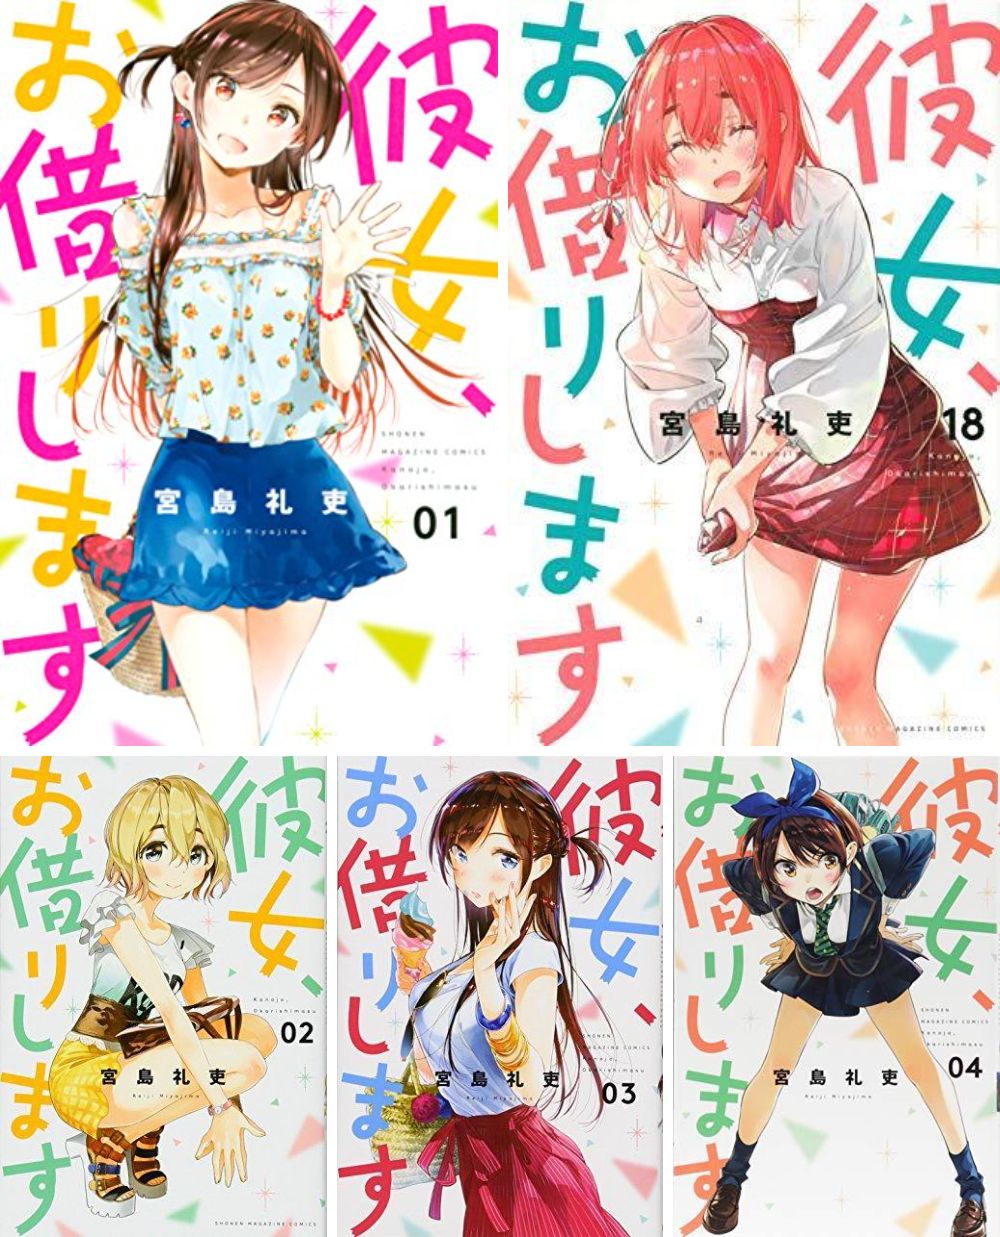 KANOJO OKARISHIMASU manga book Vol 1 to 34 set Reiji Miyajima rent a  girlfriend